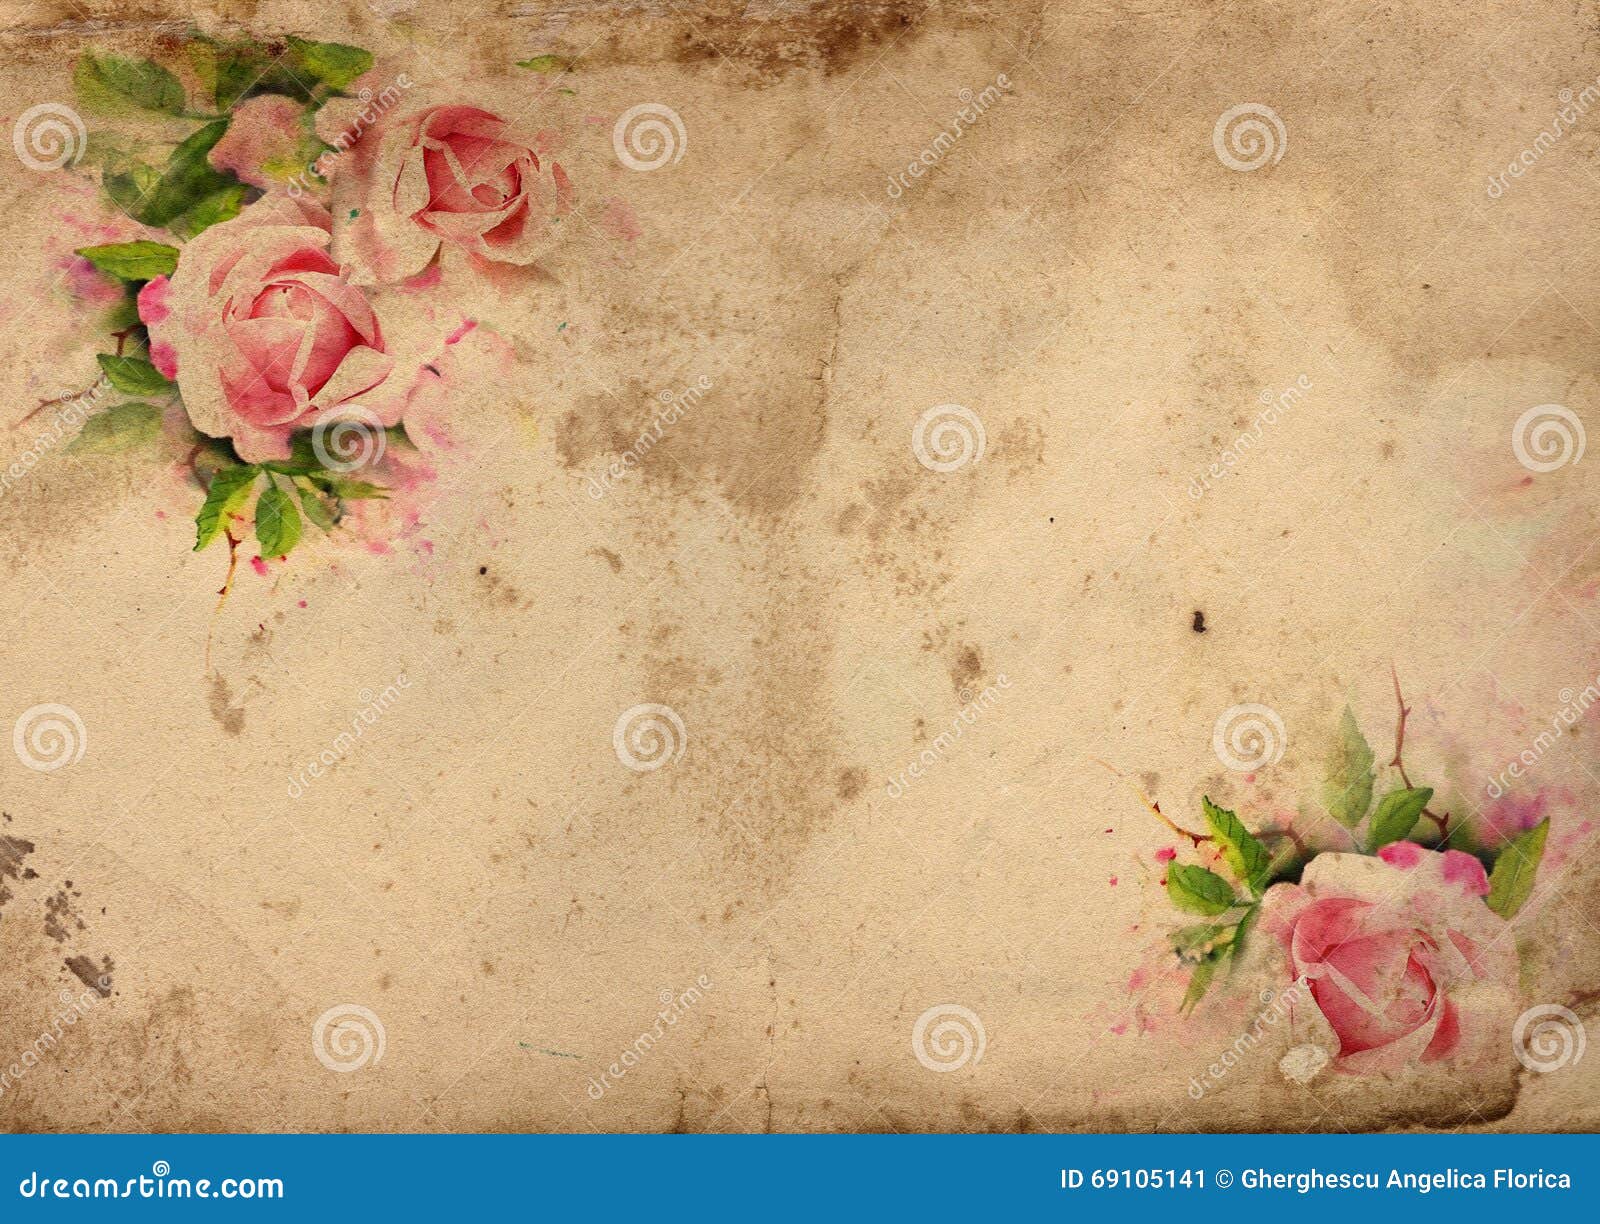 Hình nền hoa hồng cổ điển shabby chic là một sự kết hợp tuyệt vời giữa vẻ đẹp cổ điển và phong cách shabby chic hiện đại. Những bông hoa hồng đầy sắc màu trang nhã, được đặt trên một nền tối giản nhưng đầy ấn tượng. Hãy thưởng thức và cảm nhận sự tinh tế của hình nền này.